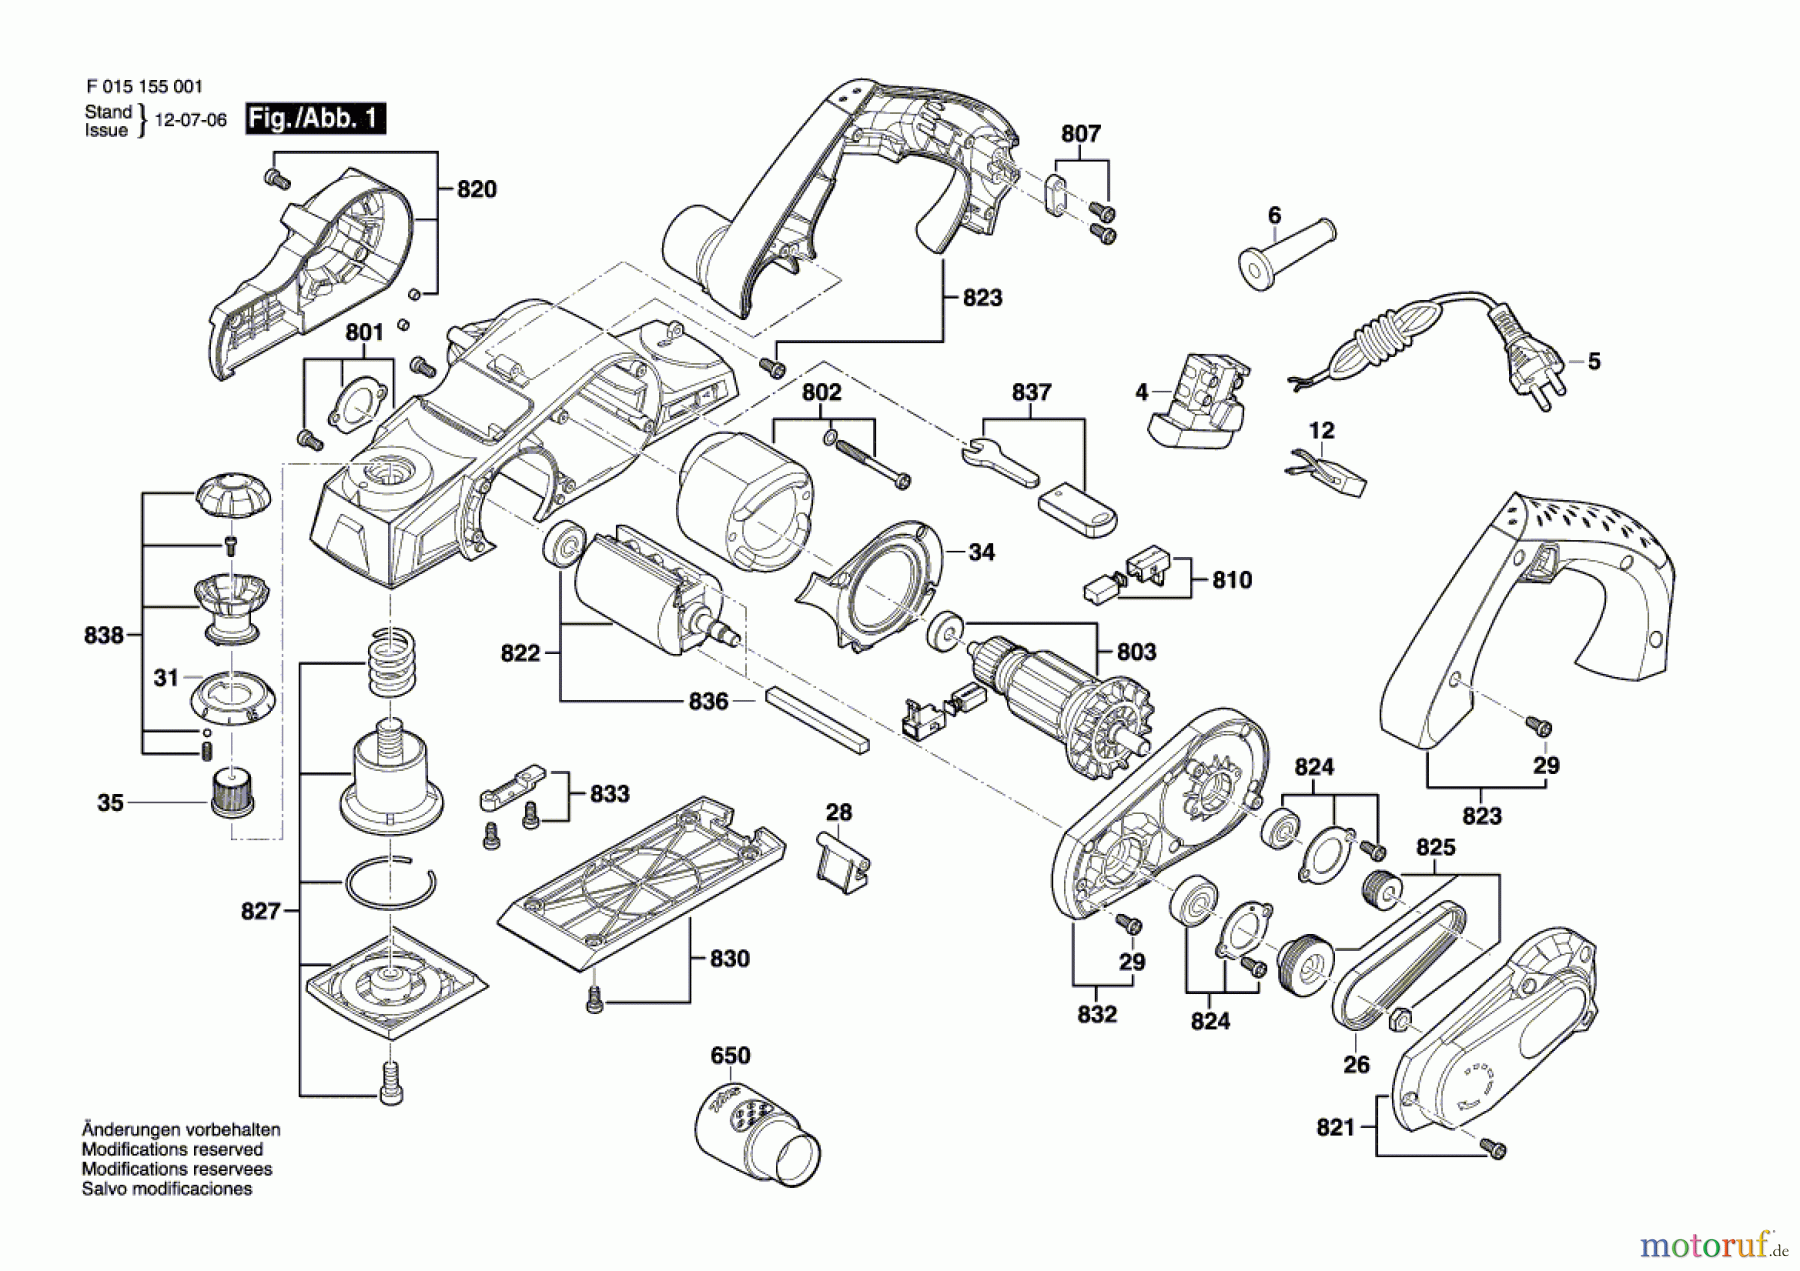  Bosch Werkzeug Handhobel 1550 Seite 1